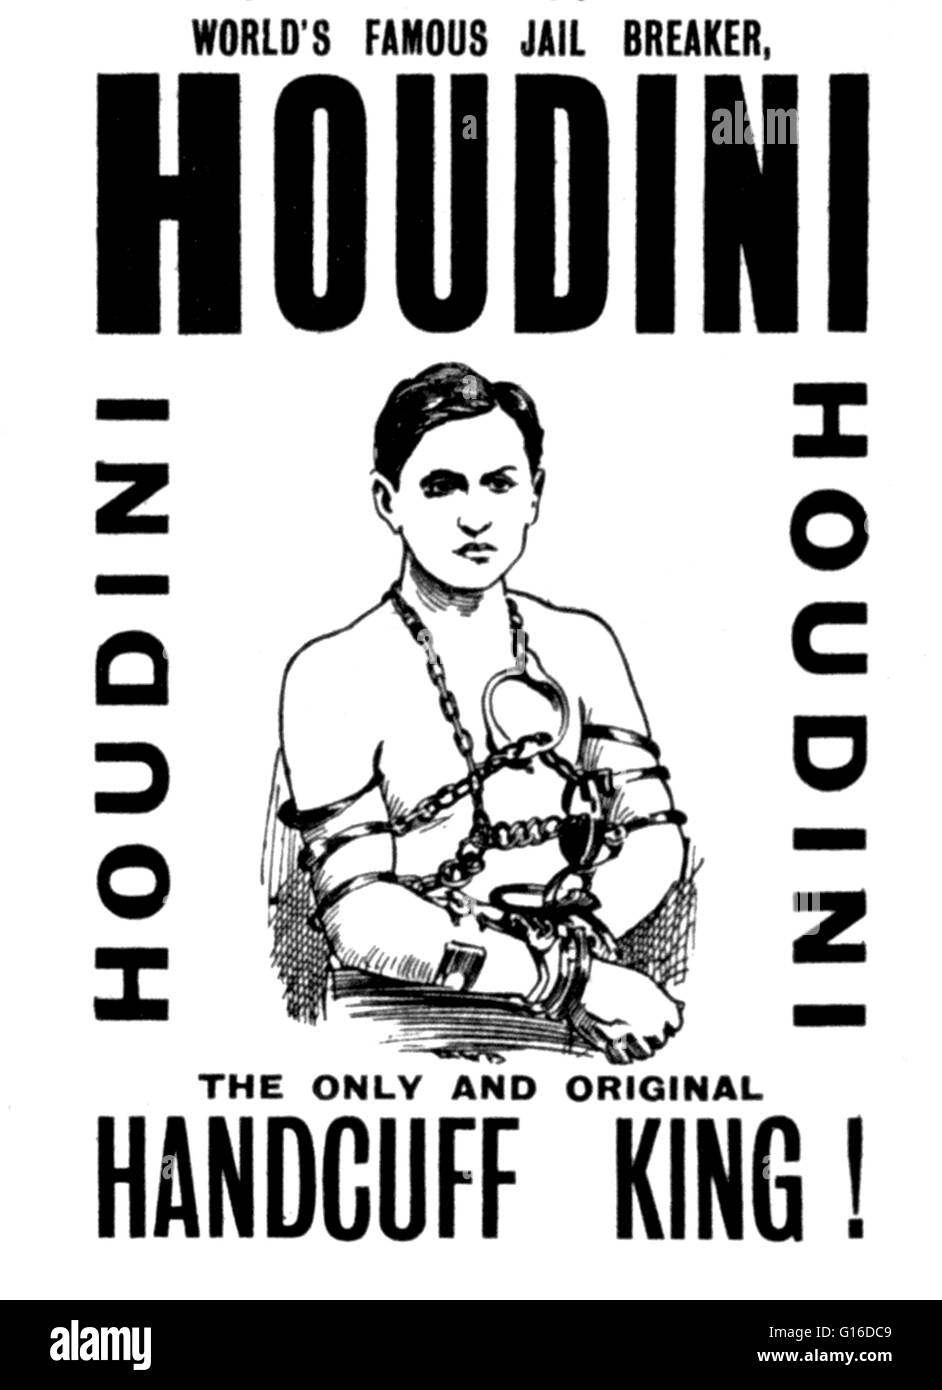 Titolo: 'Speciale starring impegno record del mondo la famosa prigione breaker, Houdini l'unica ed originale manette re ' litografia di poster creato da William E. Berry, Stampante, 1903. Harry Houdini (Marzo 24, 1874 - 31 ottobre 1926) era un ungherese Foto Stock